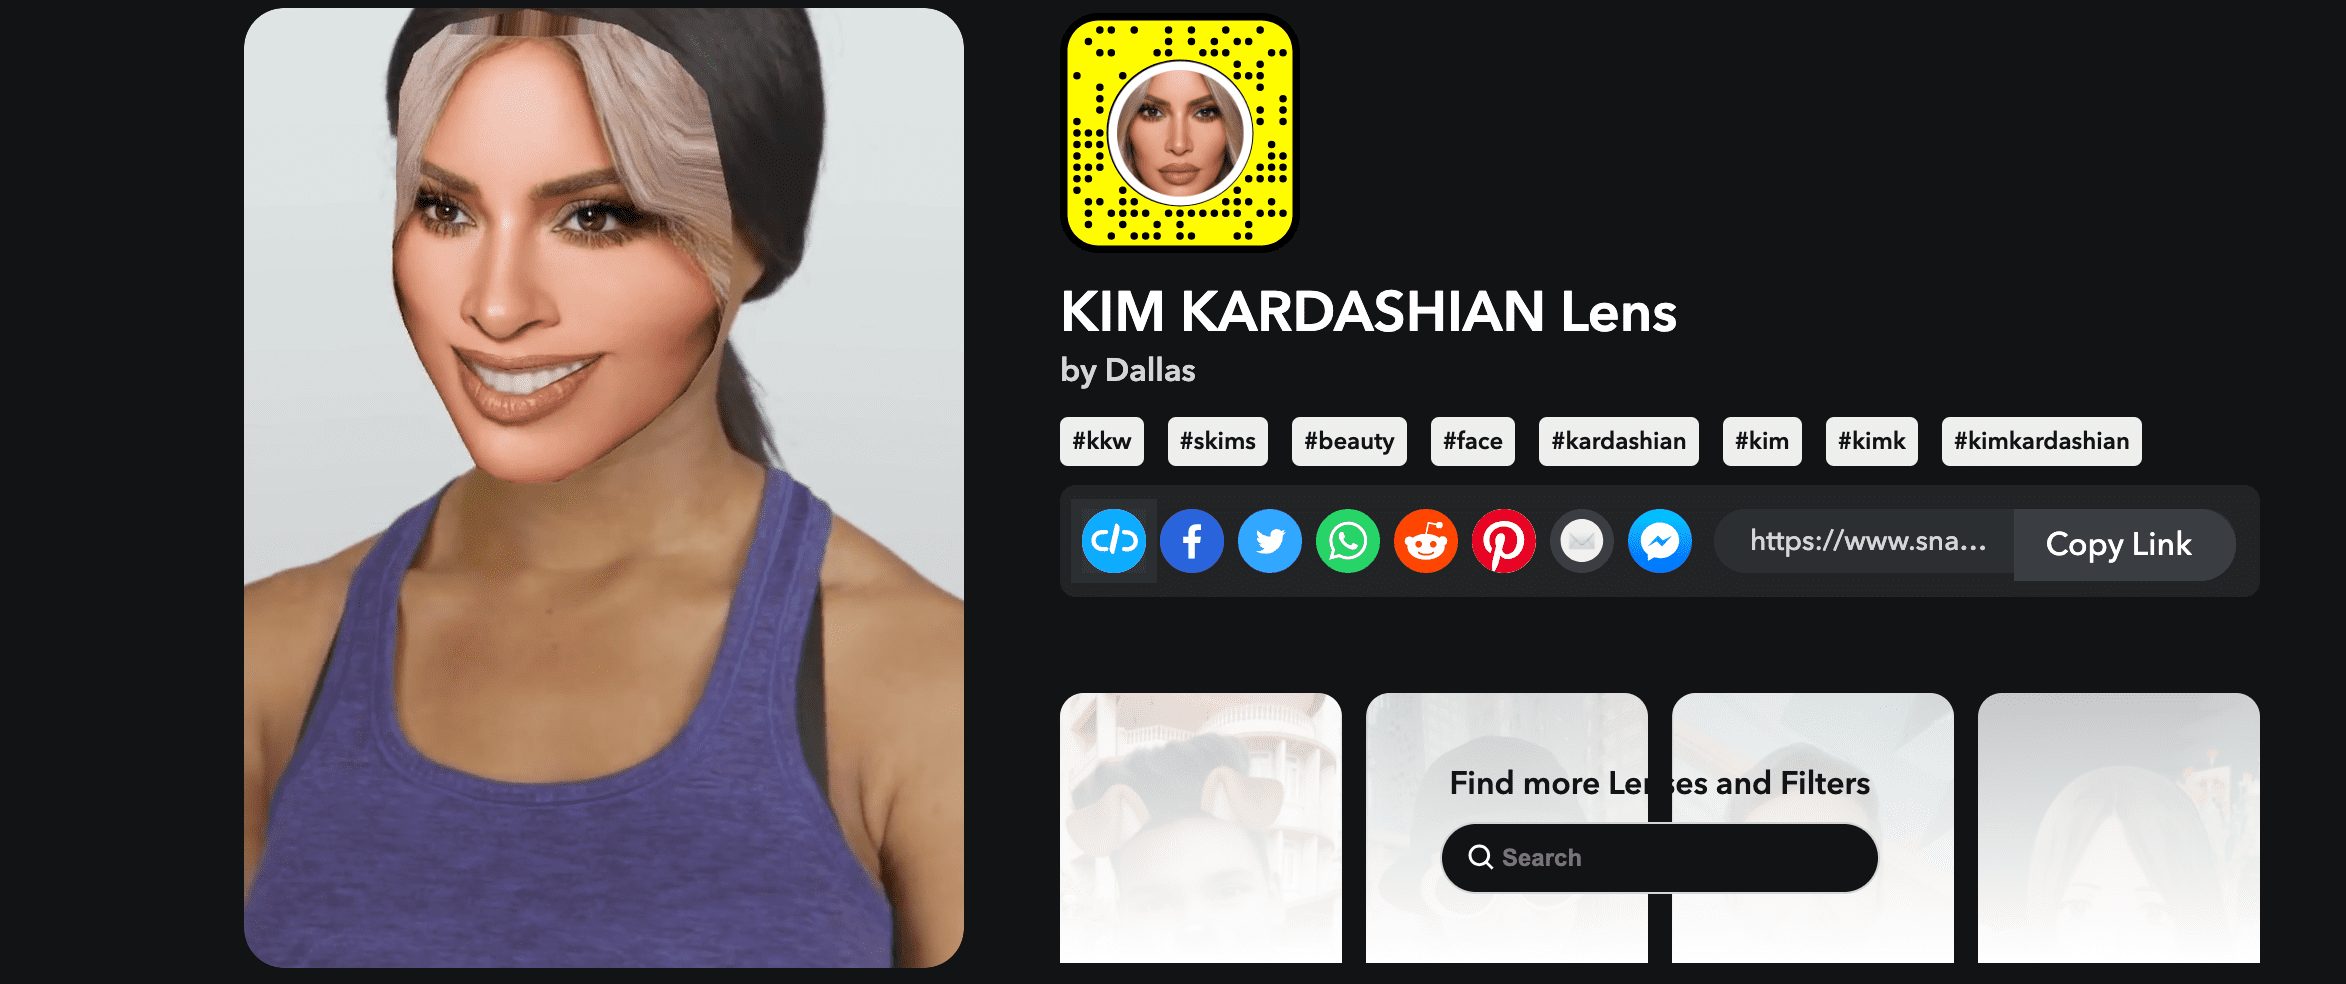 Kim Kardashian Lens by dallas